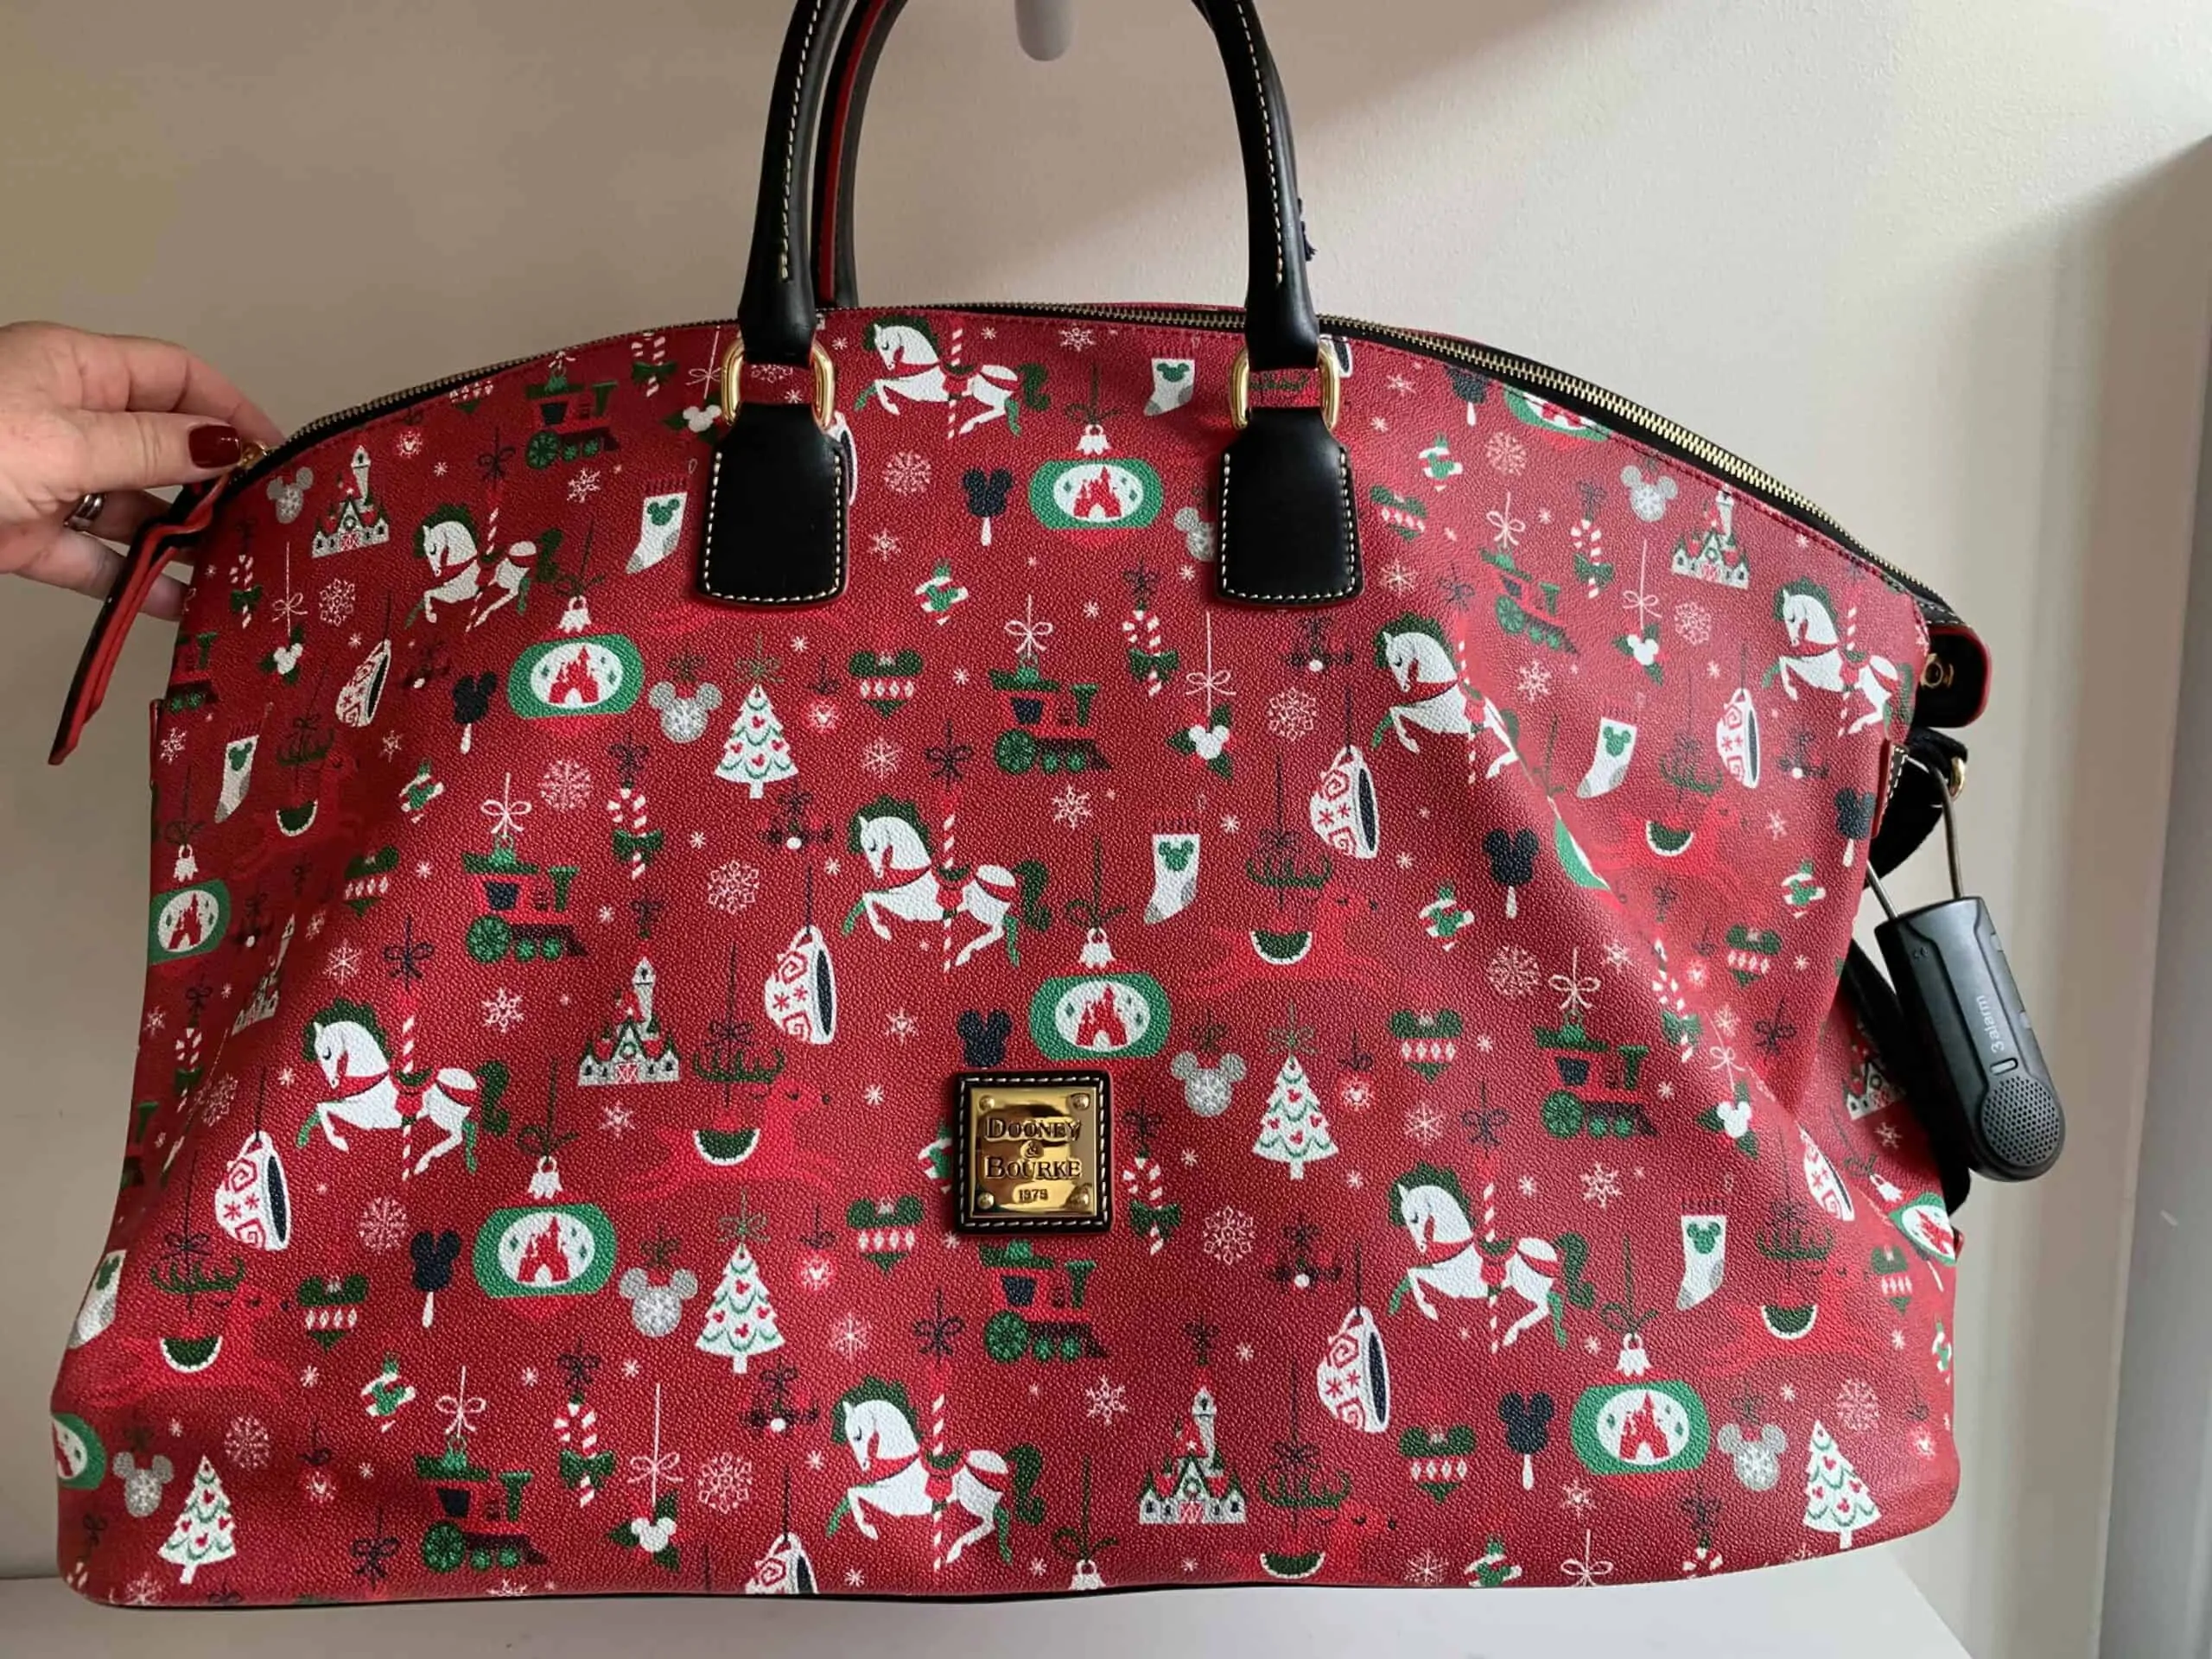 Christmas Holiday 2019 Weekender Duffel Bag by Disney Dooney Bourke